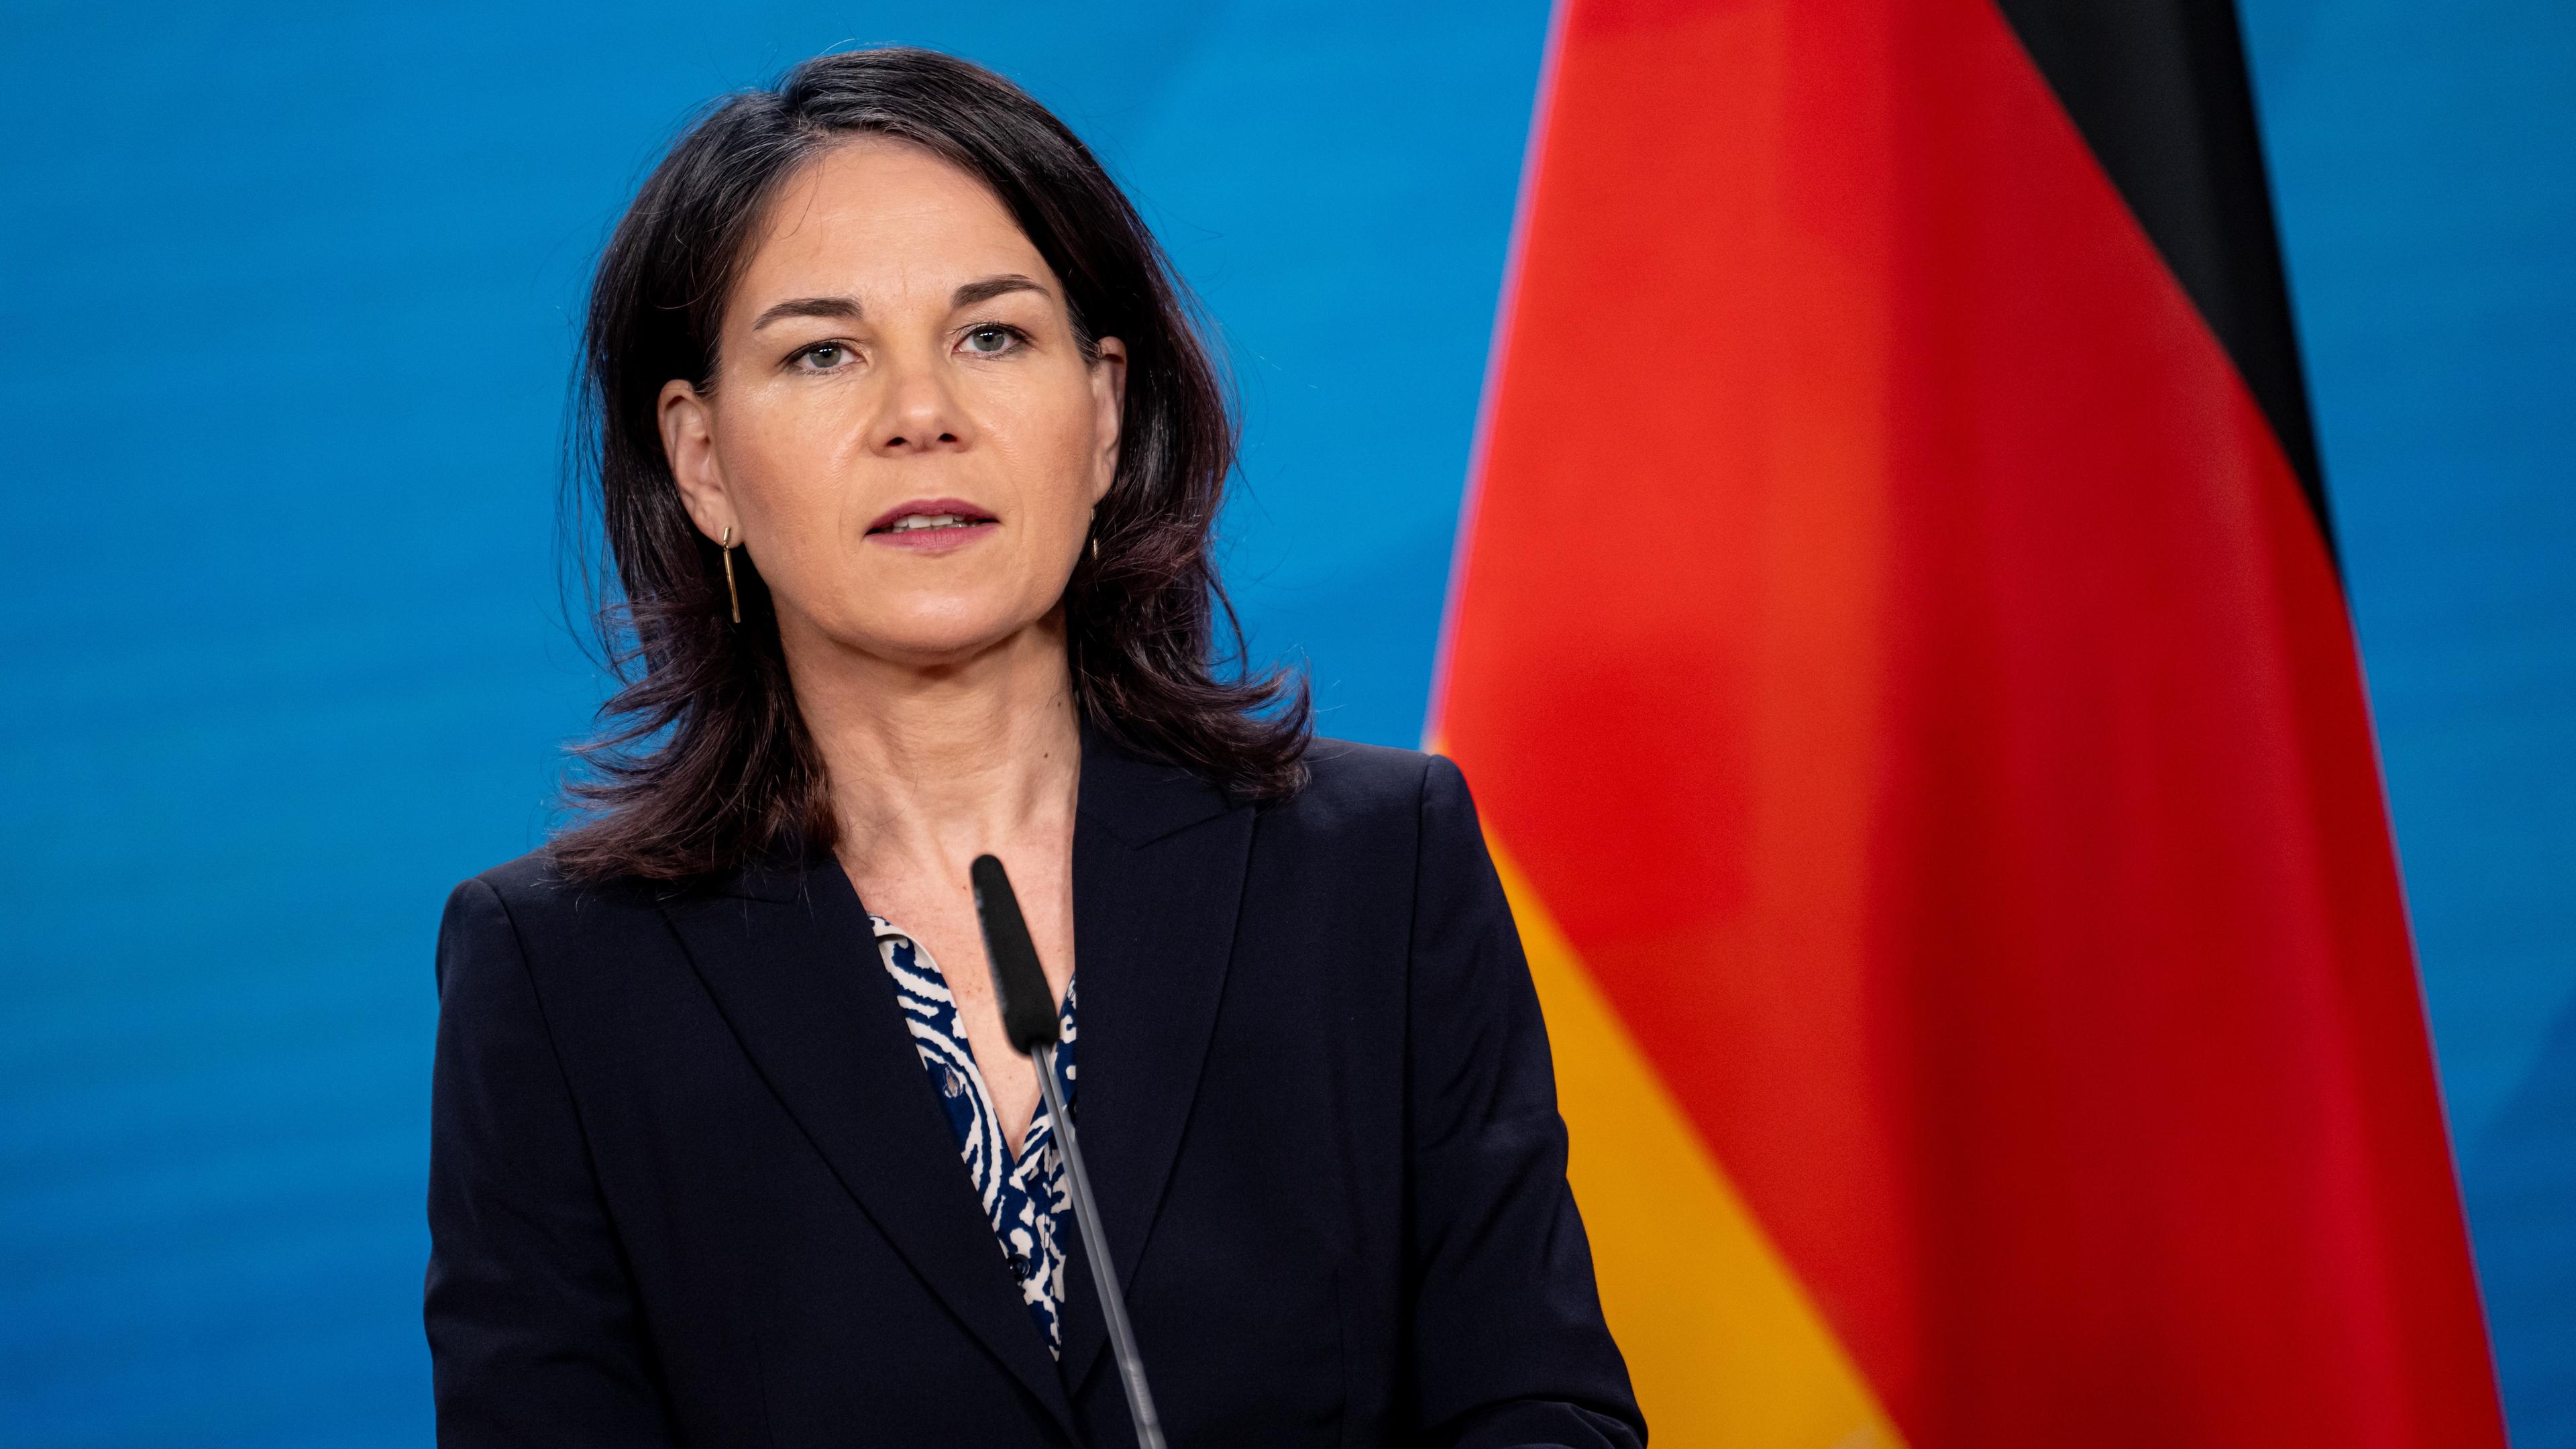  Annalena Baerbock (Bündnis 90/Die Grünen), Außenministerin, gibt nach dem iranischen Angriff auf Israel ein Statement im Auswärtigen Amt